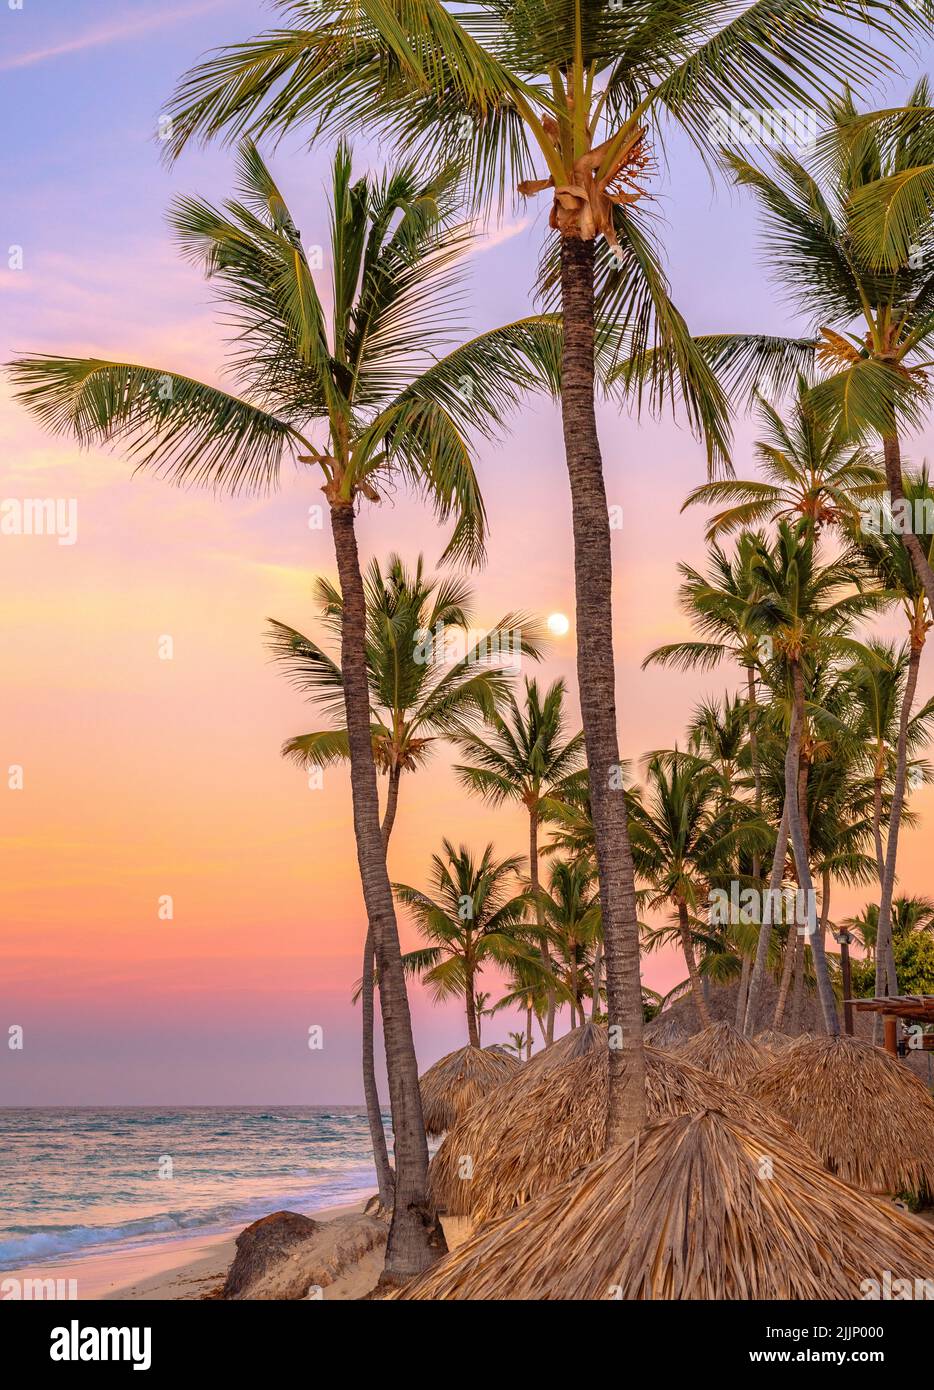 Coucher de soleil ciel coloré avec palmiers et lune sur une plage tropicale Banque D'Images